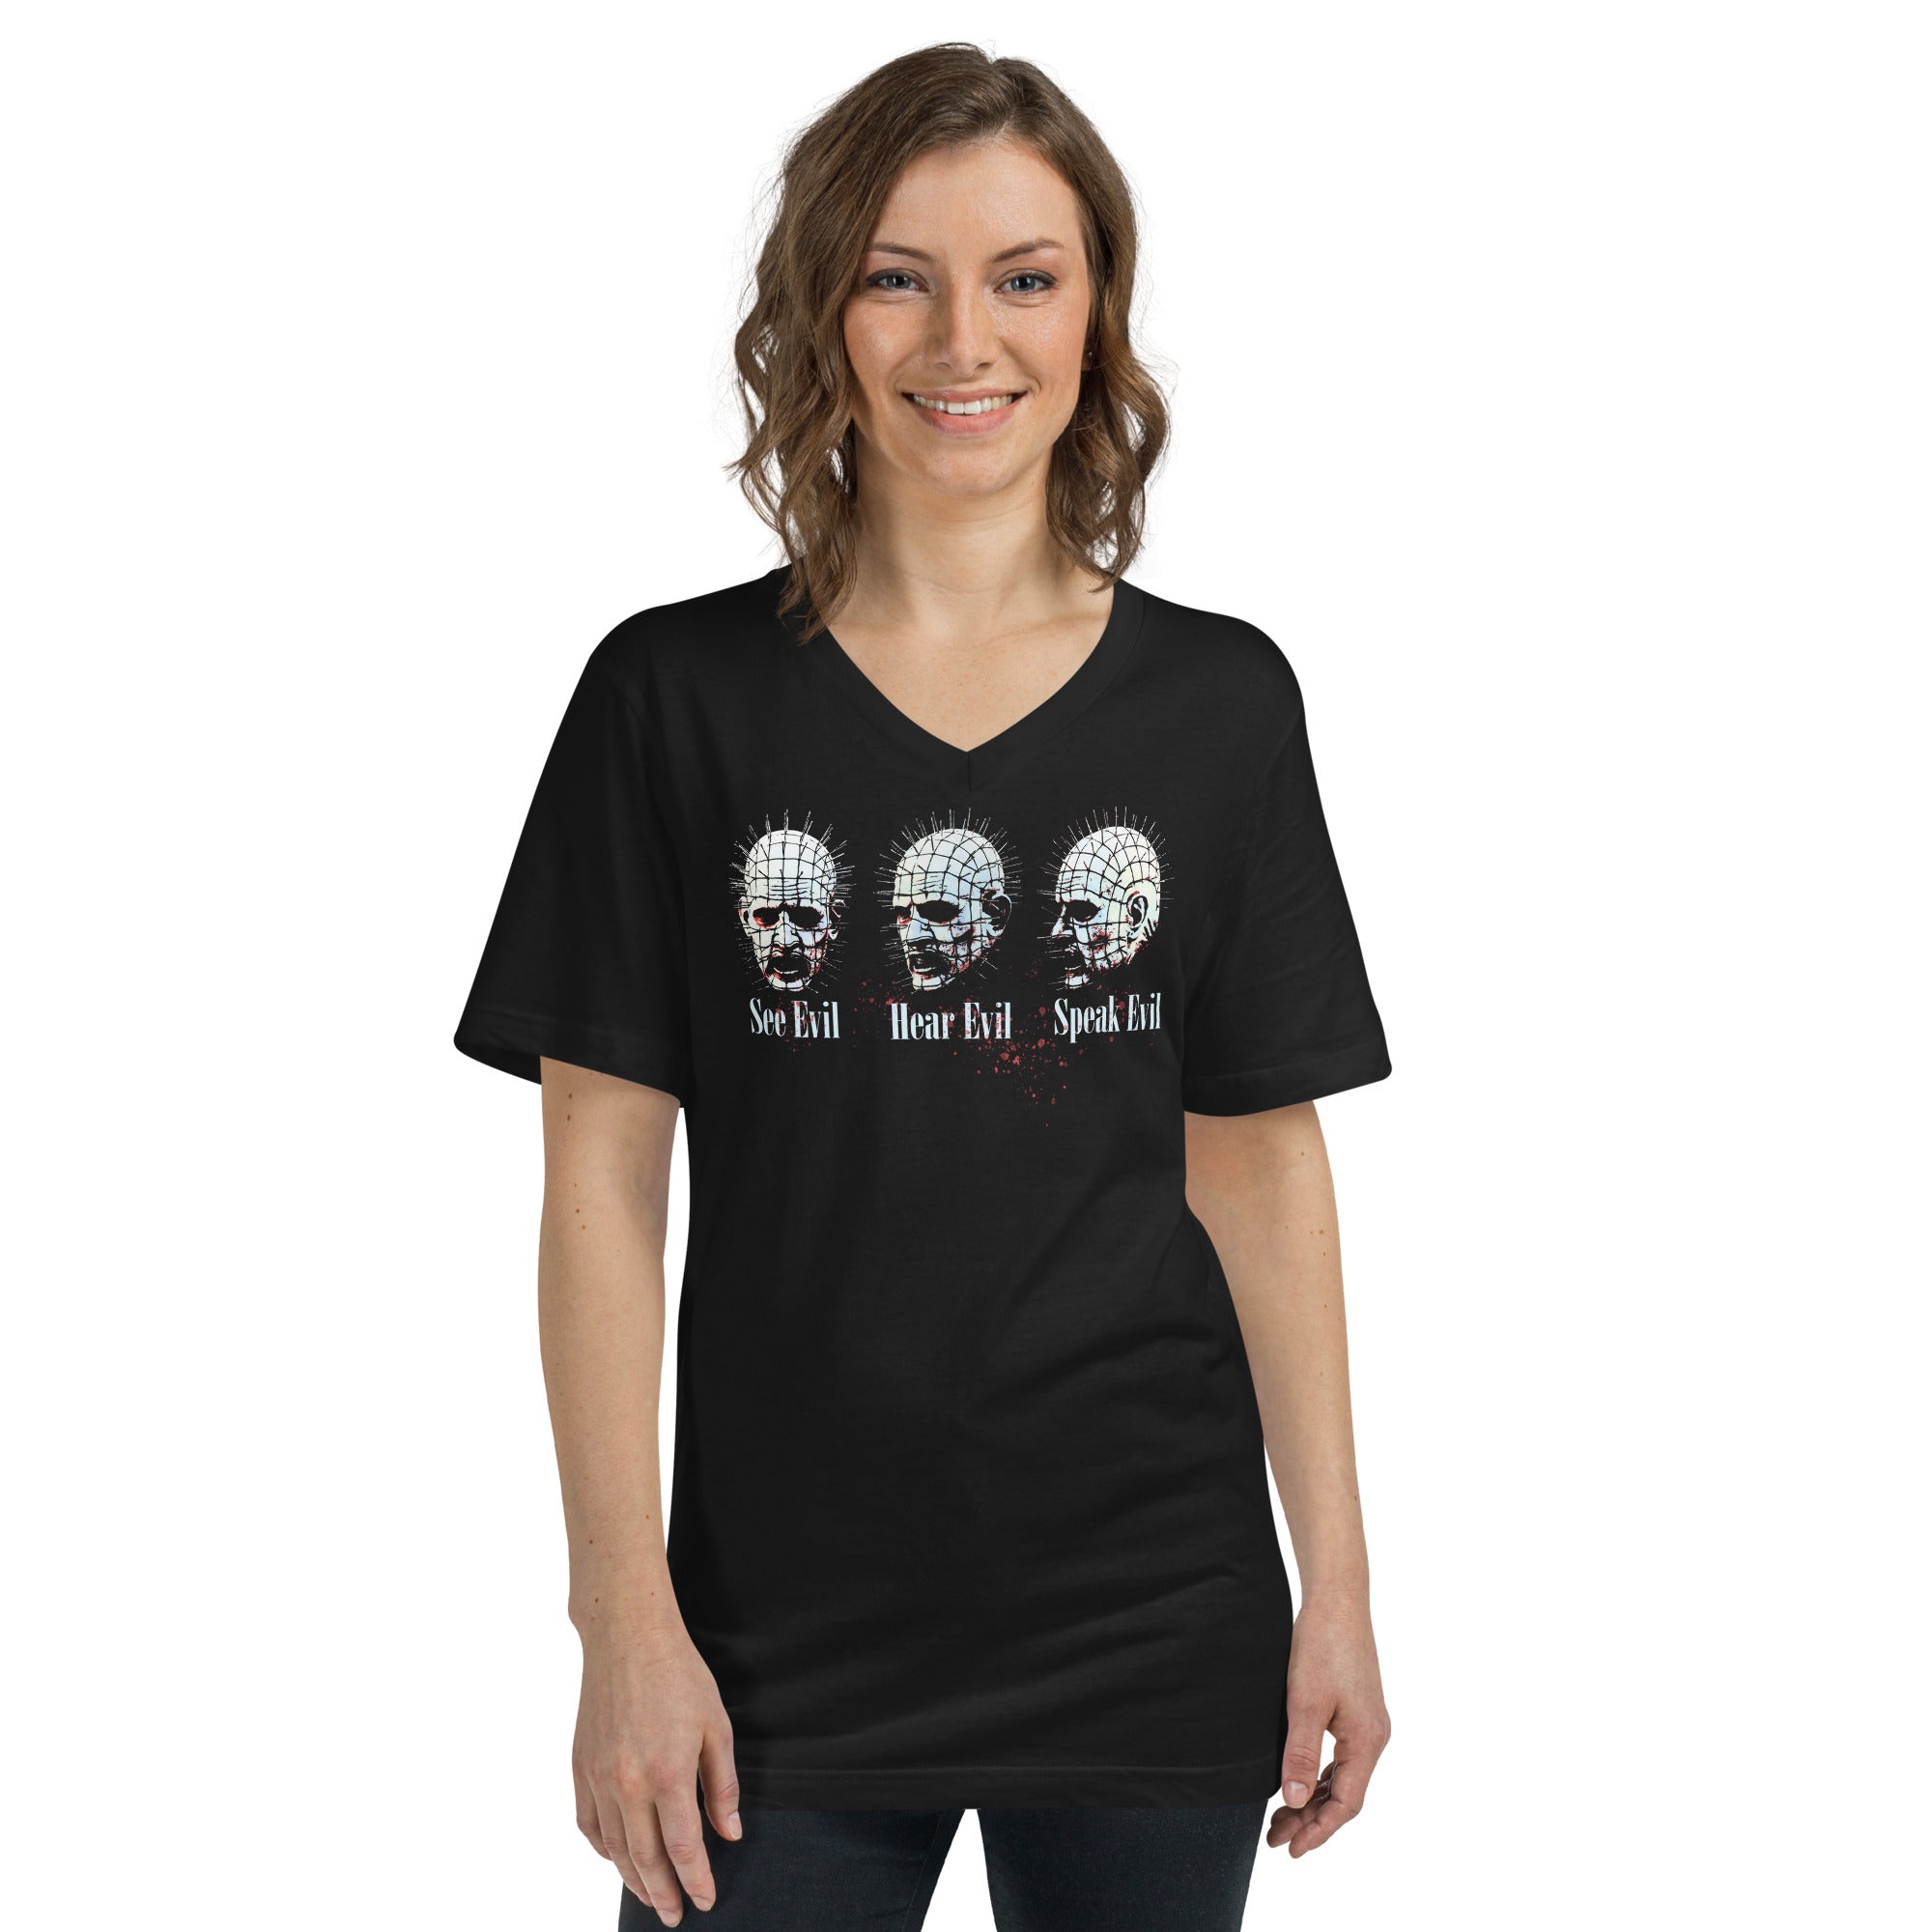 See Evil, Hear Evil, Speak Evil Horror Women’s Short Sleeve V-Neck T-Shirt - Edge of Life Designs